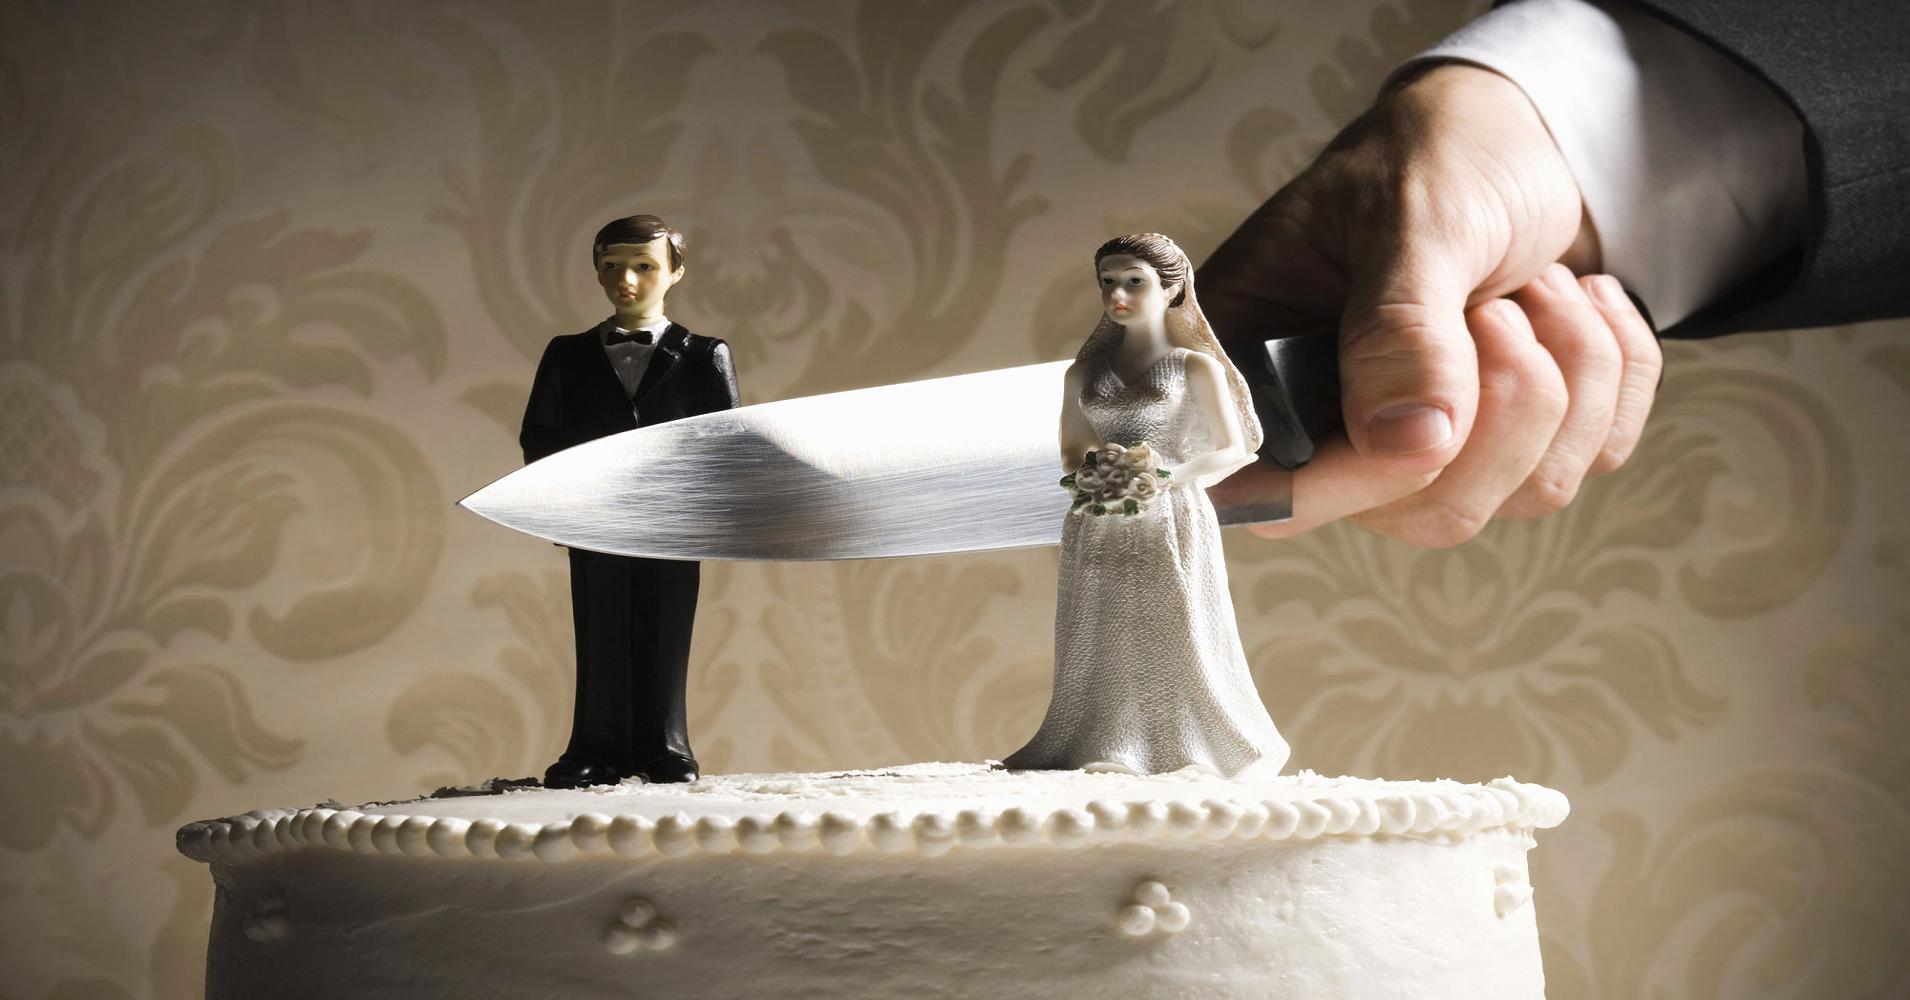 طلاق یک راهکار اصولی - دکتر طباطبایی